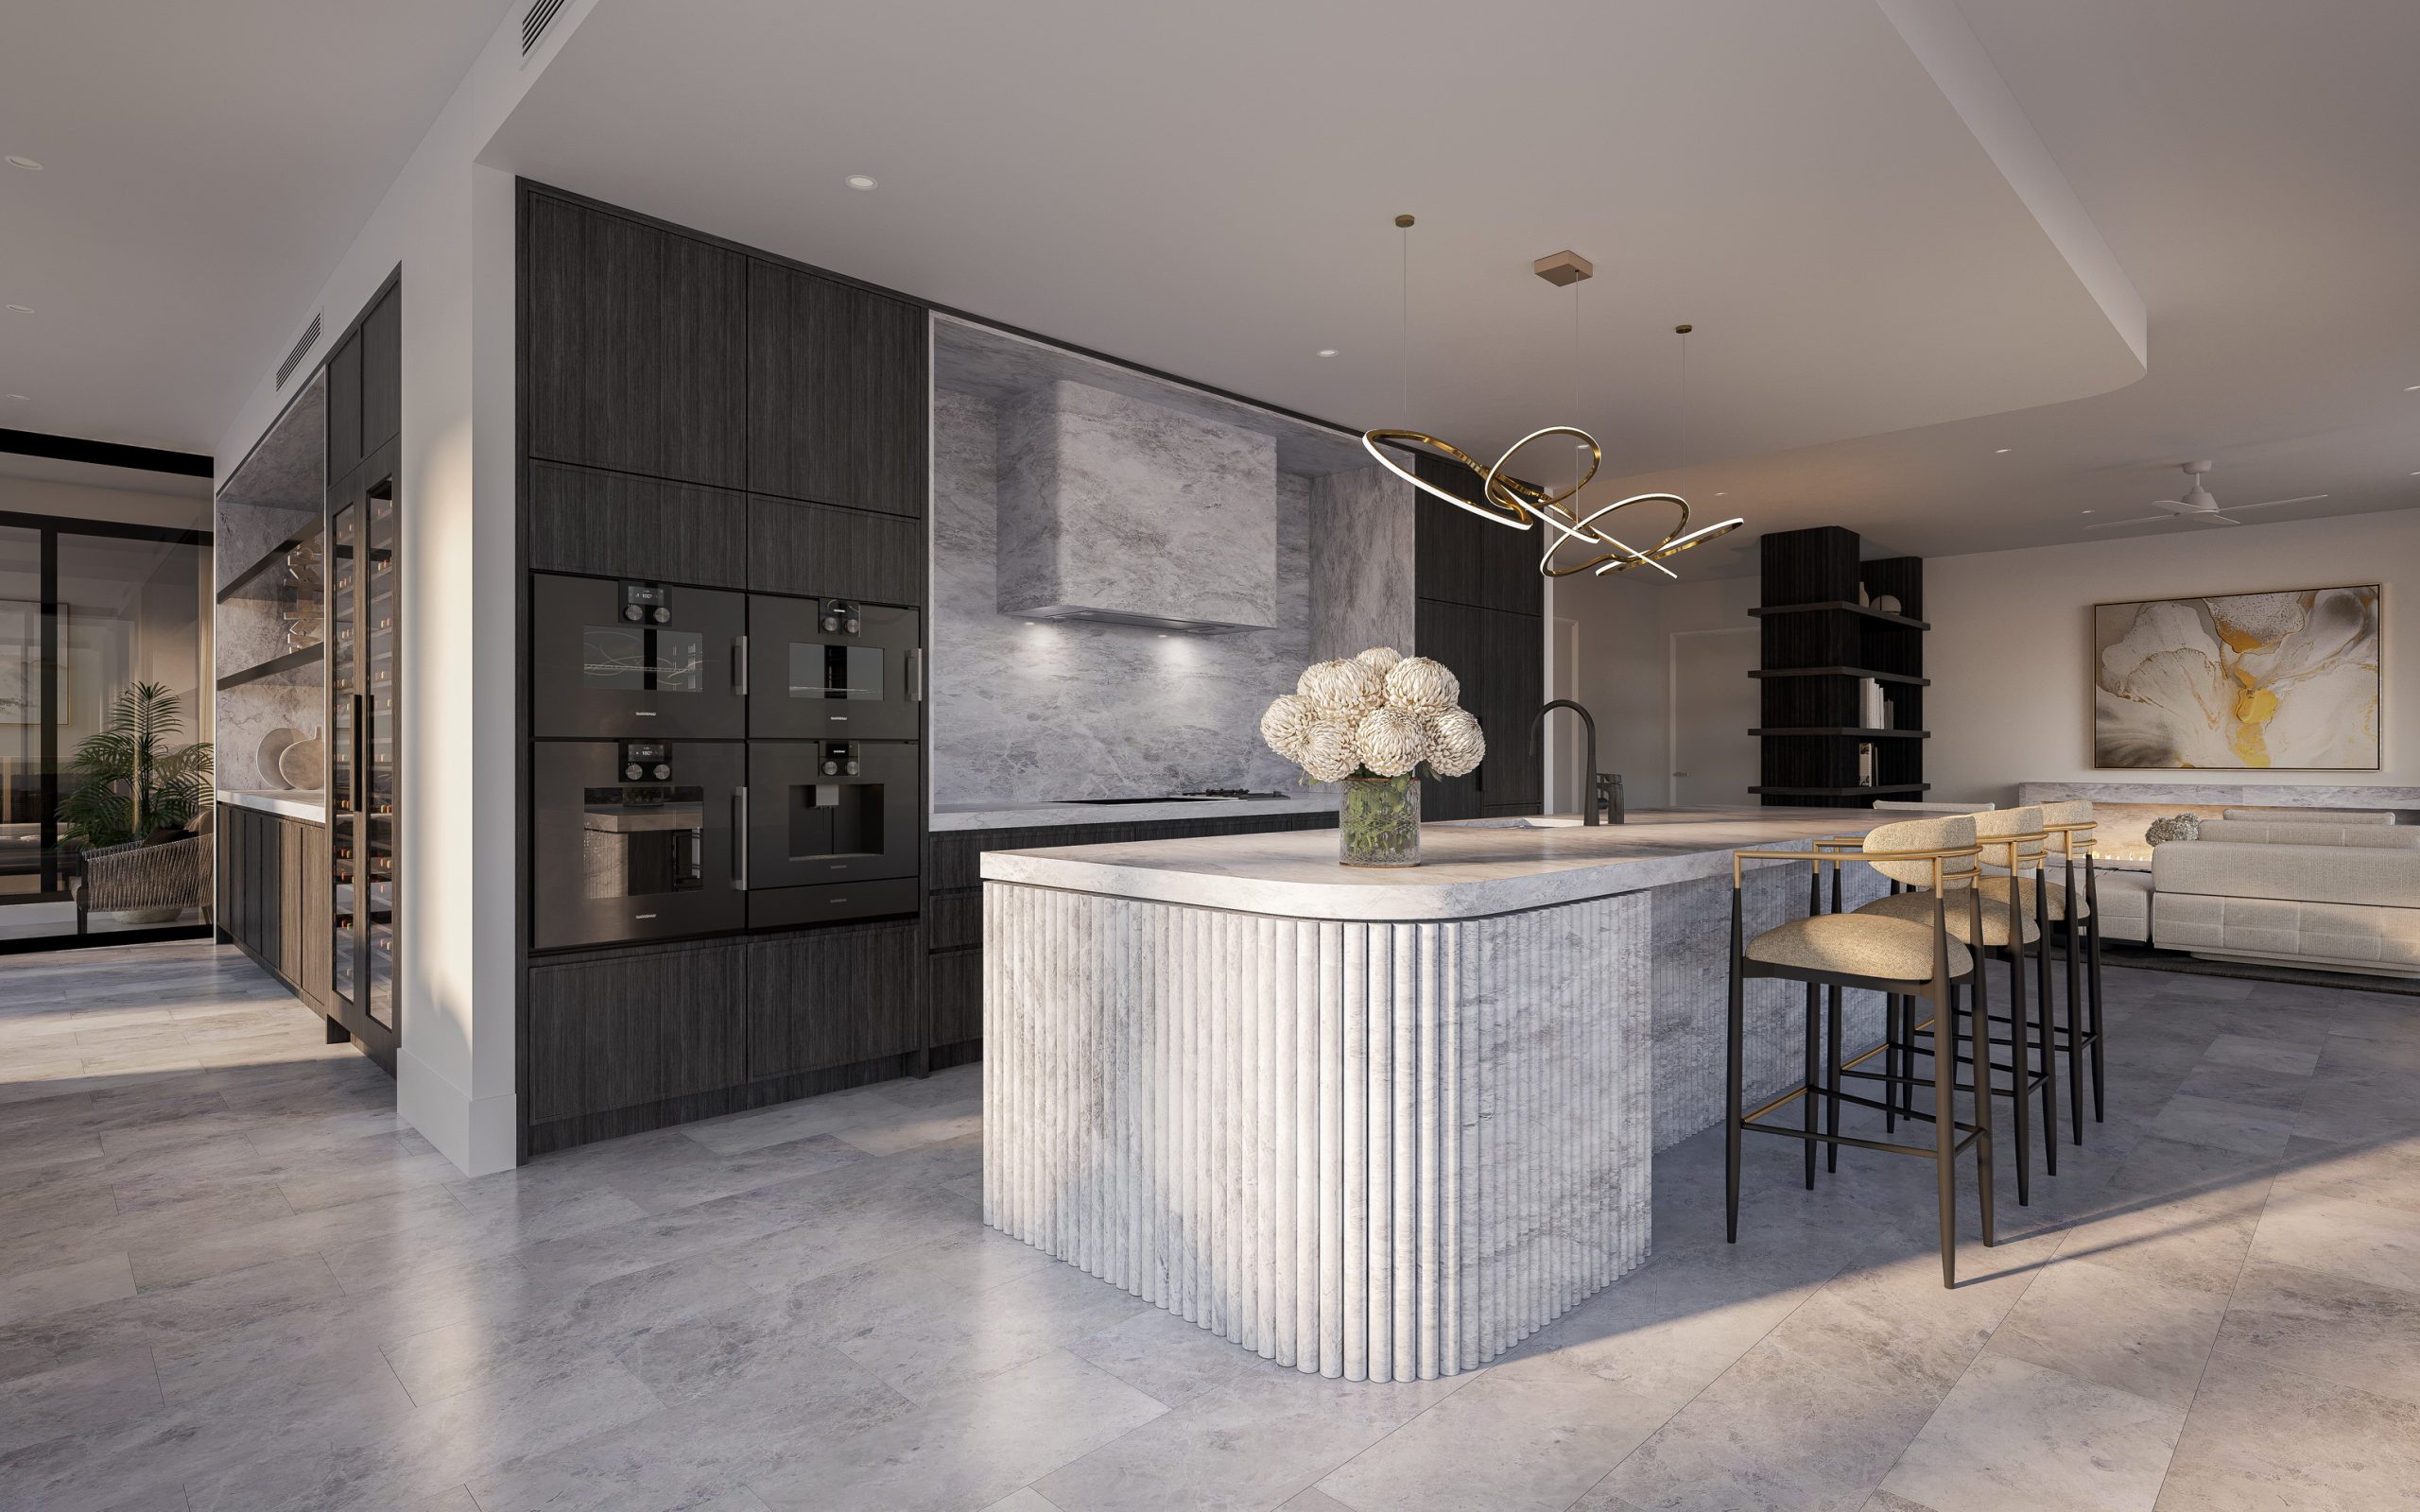 Rivello-queensland-render-3d-fkd-studio-architecture-luxury-interior-design-kitchen